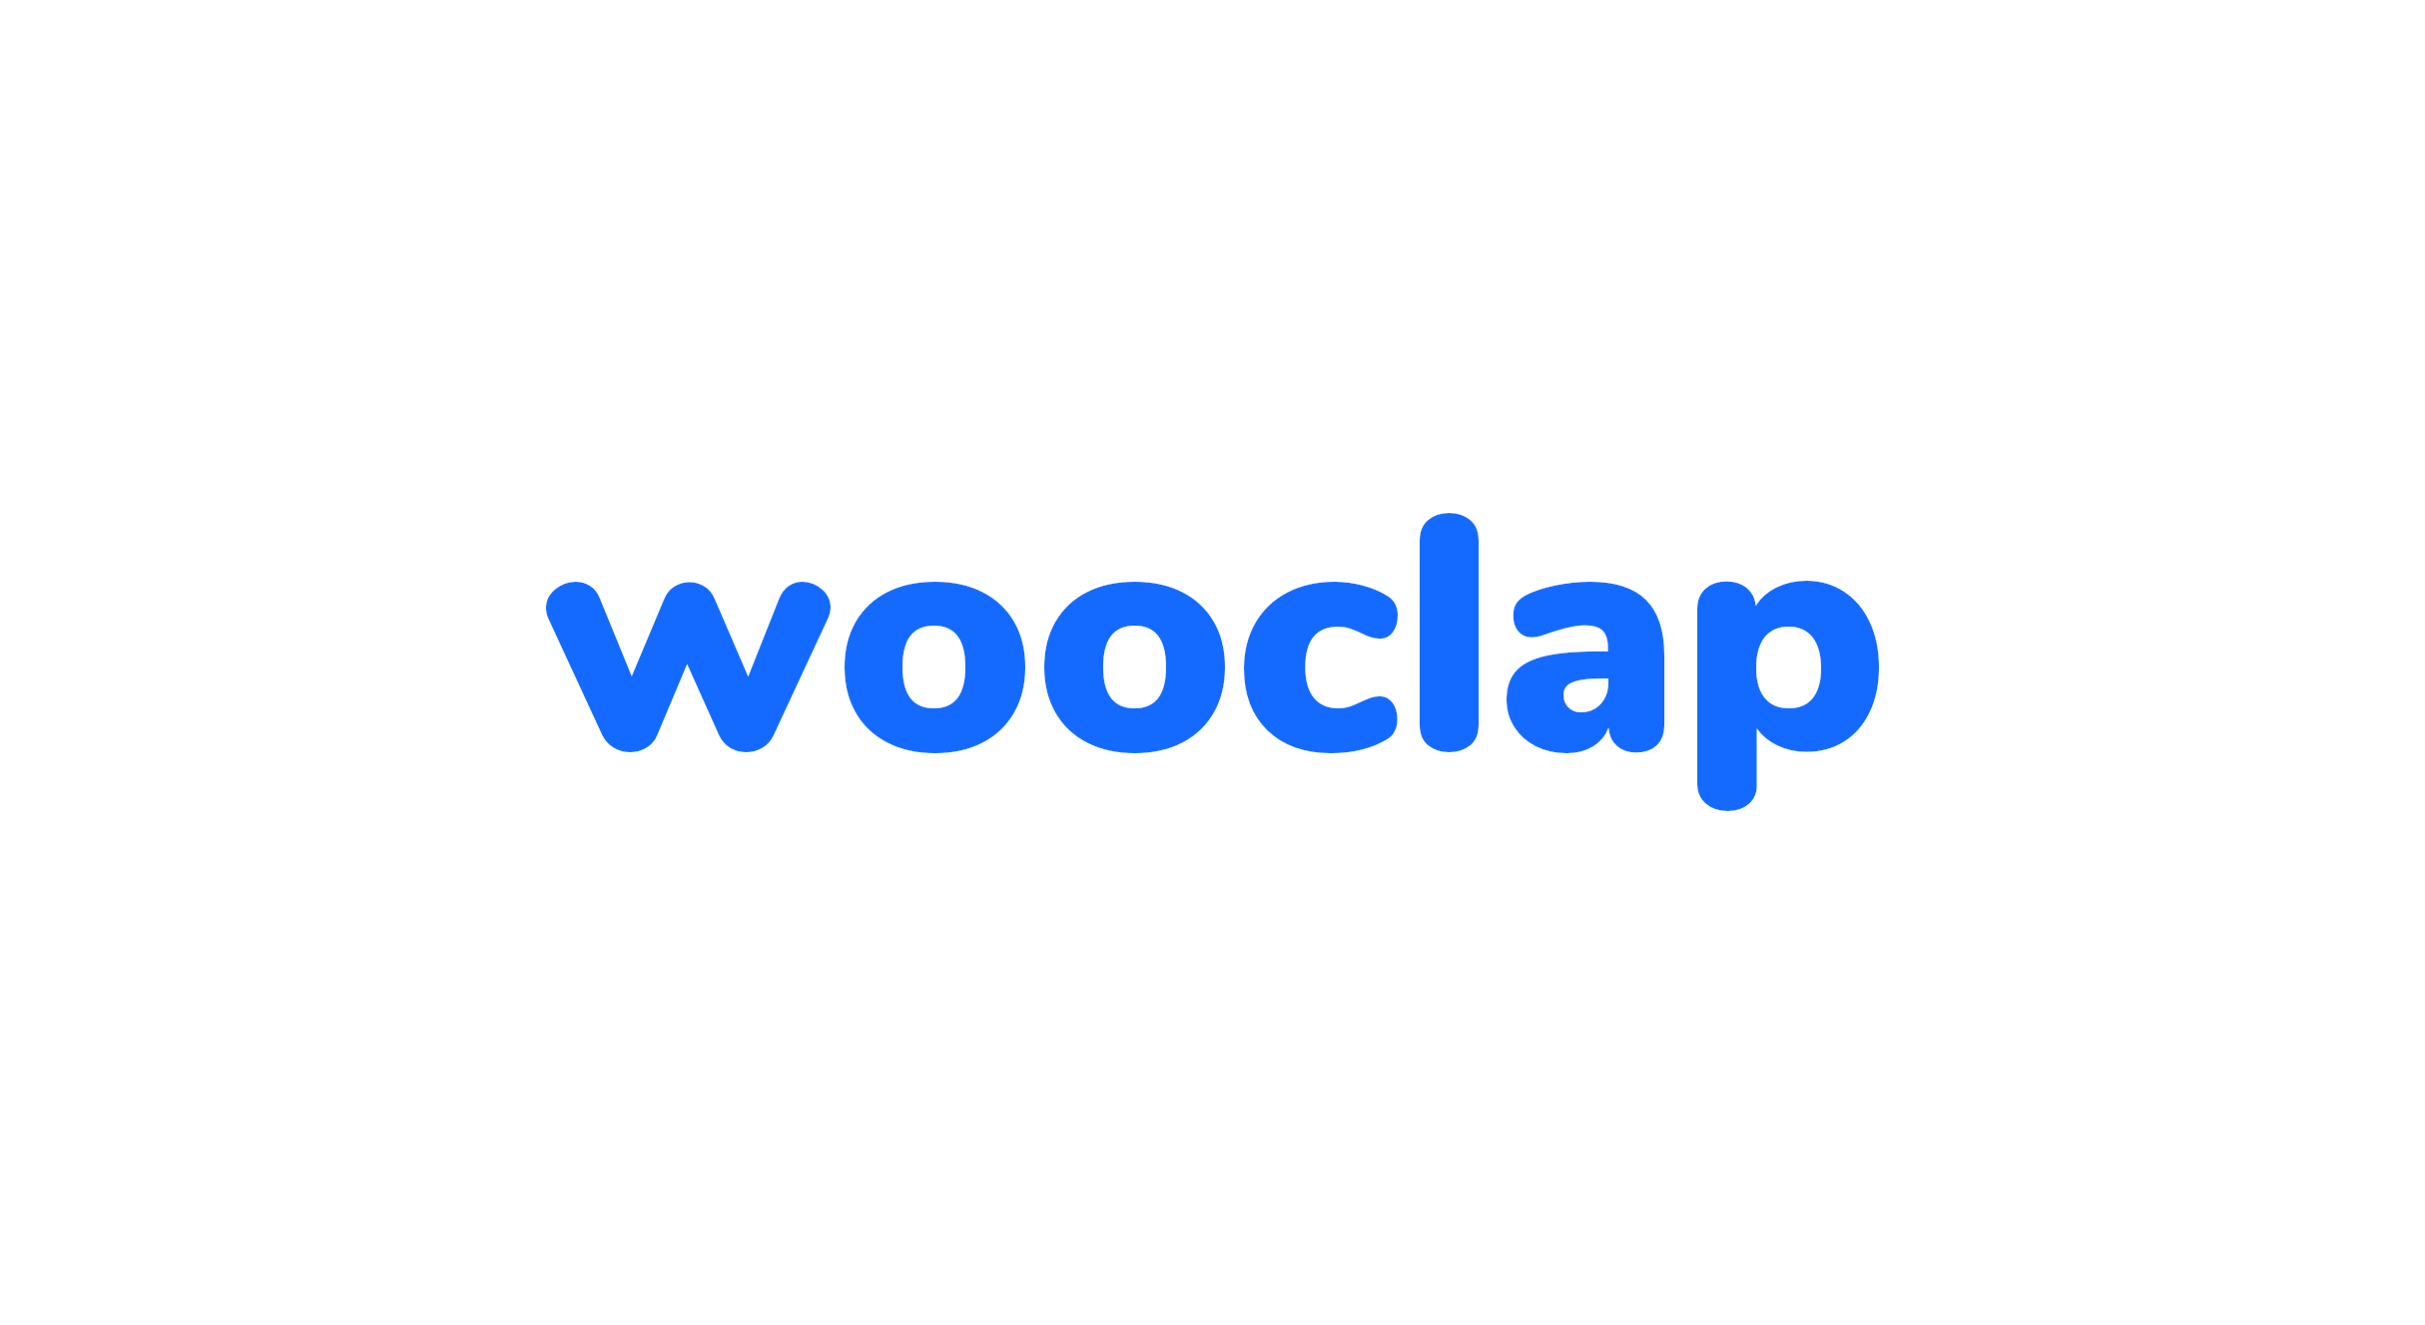 Wooclap